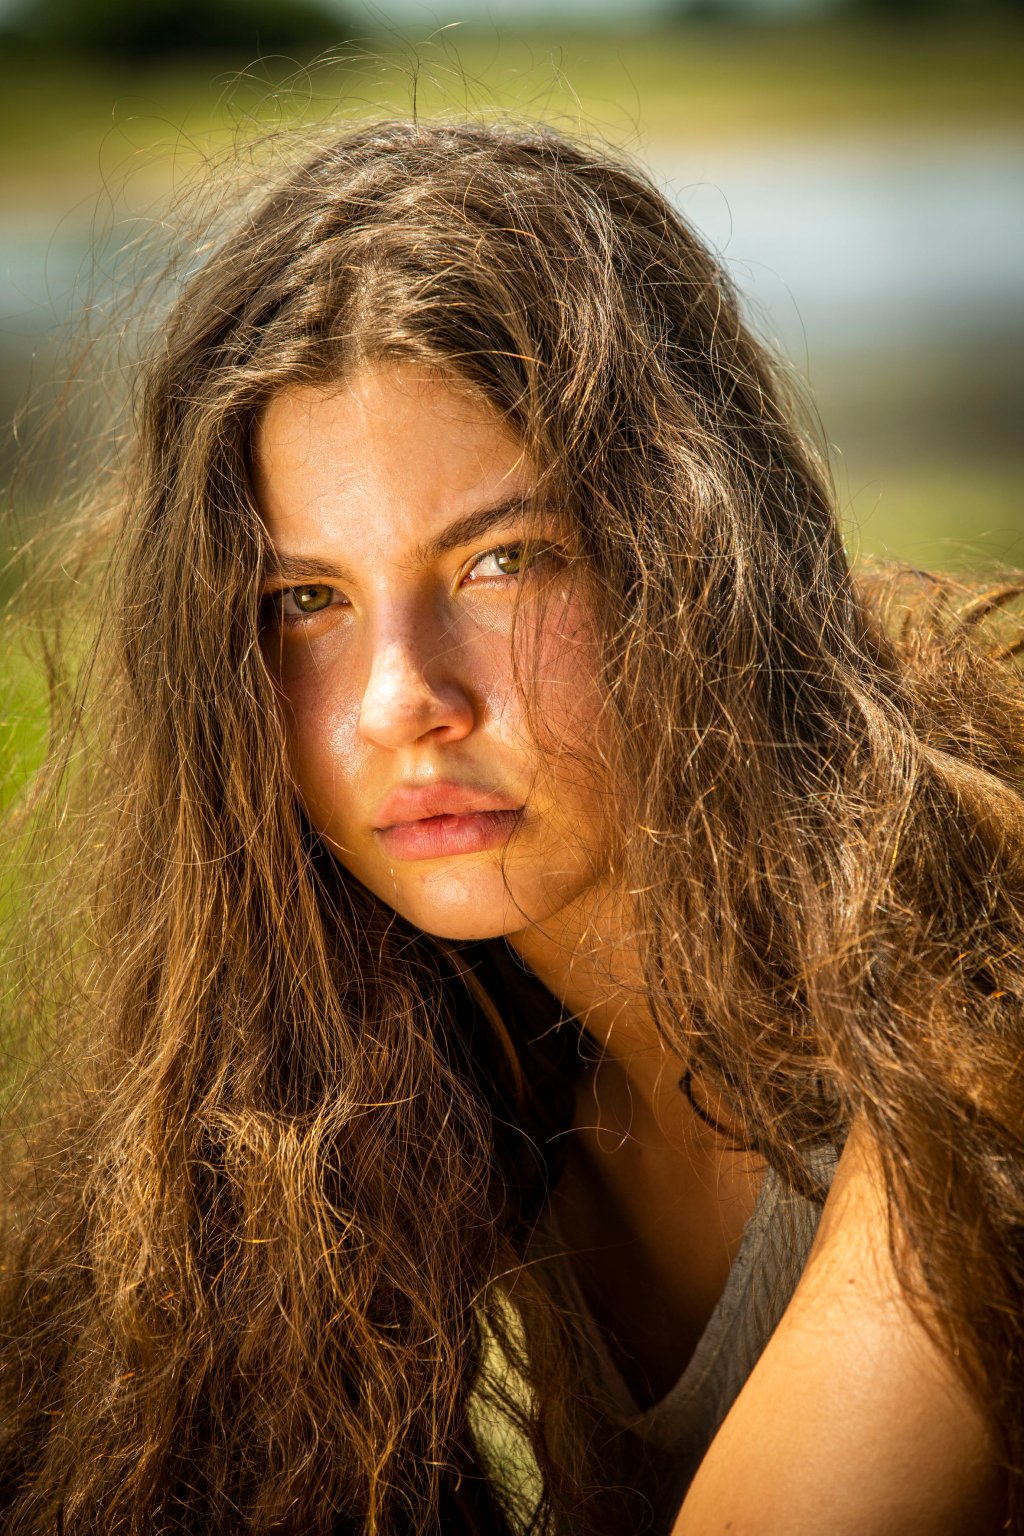 Juma (Alanis Guillen) em cena de Pantanal; ela está com expressão séria e parte do cabelo no rosto